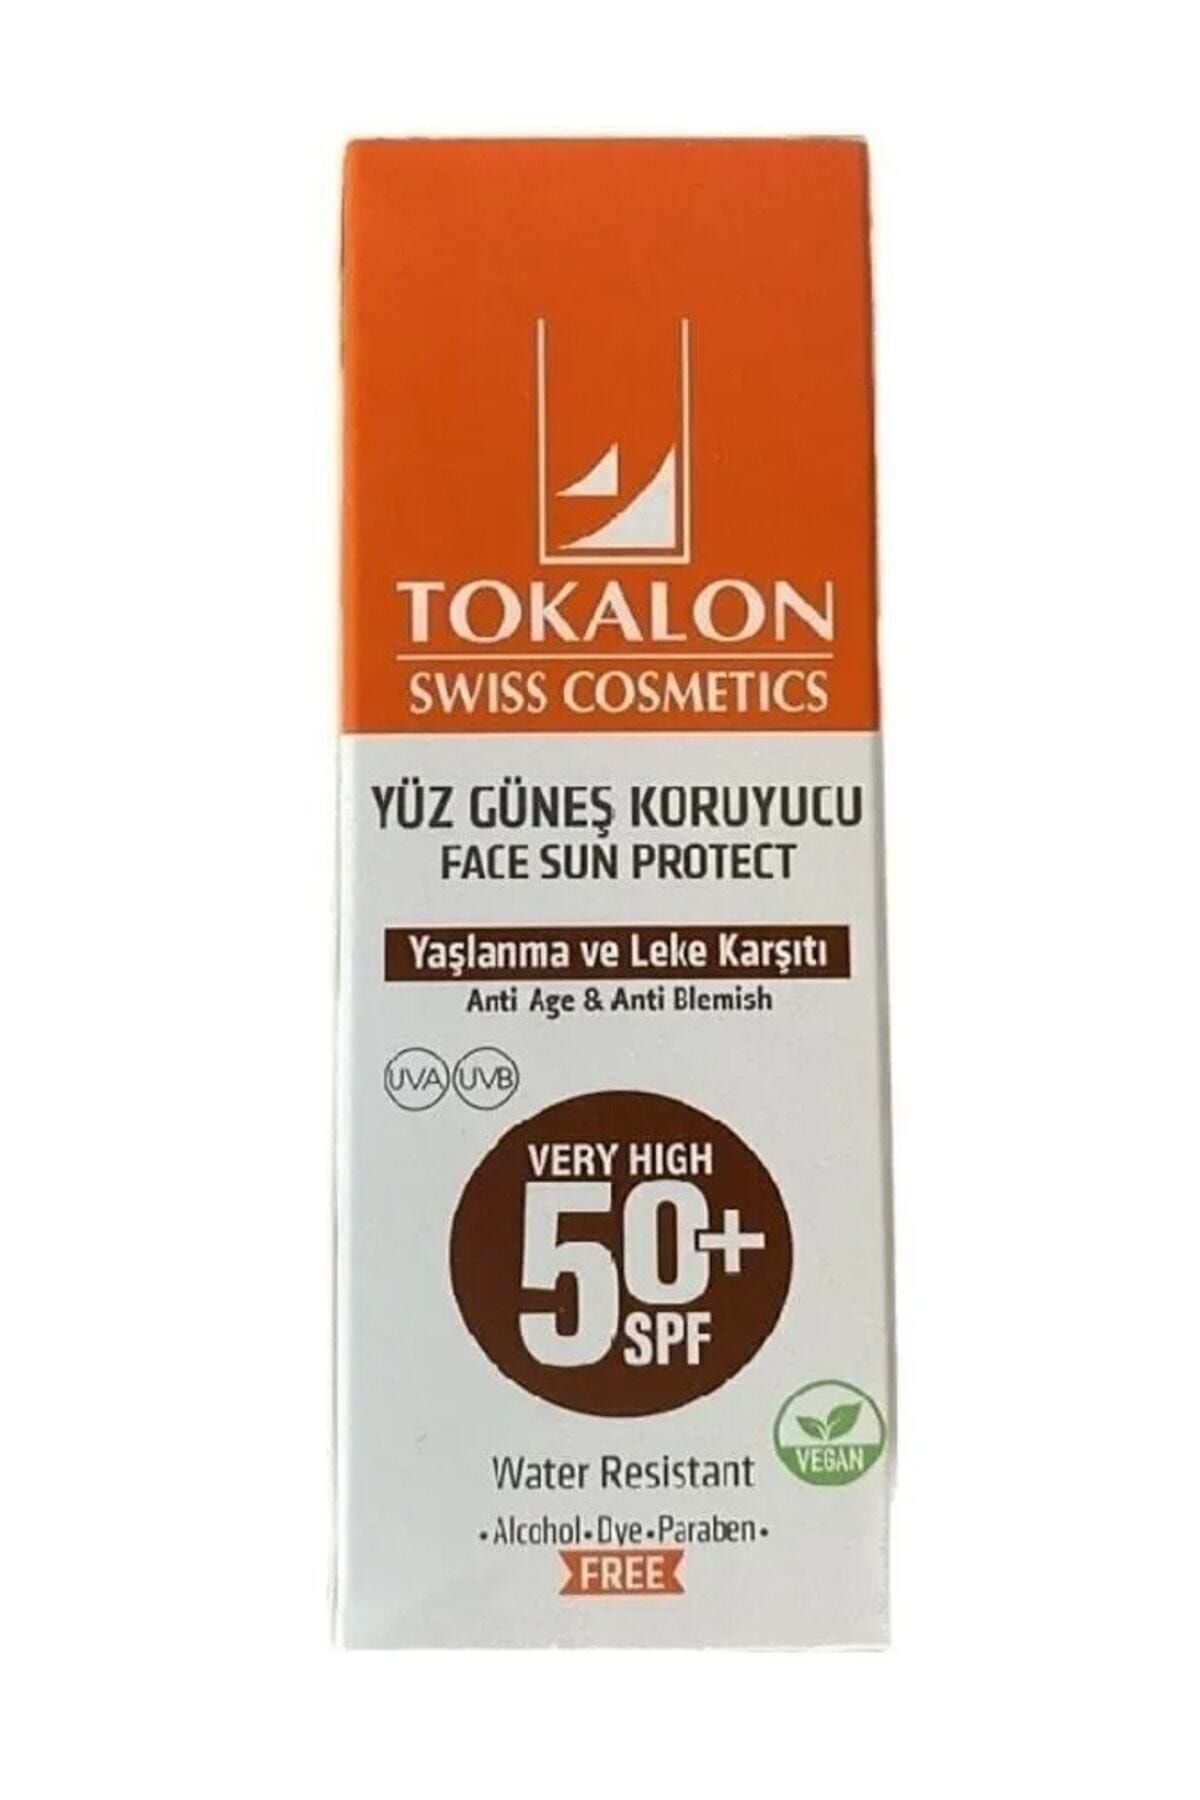 Tokalon Yüz Güneş Koruyucu Yaşlanma Ve Leke Karşıtı Spf50 - Face Sun Protect Anti-ageing 60 ml